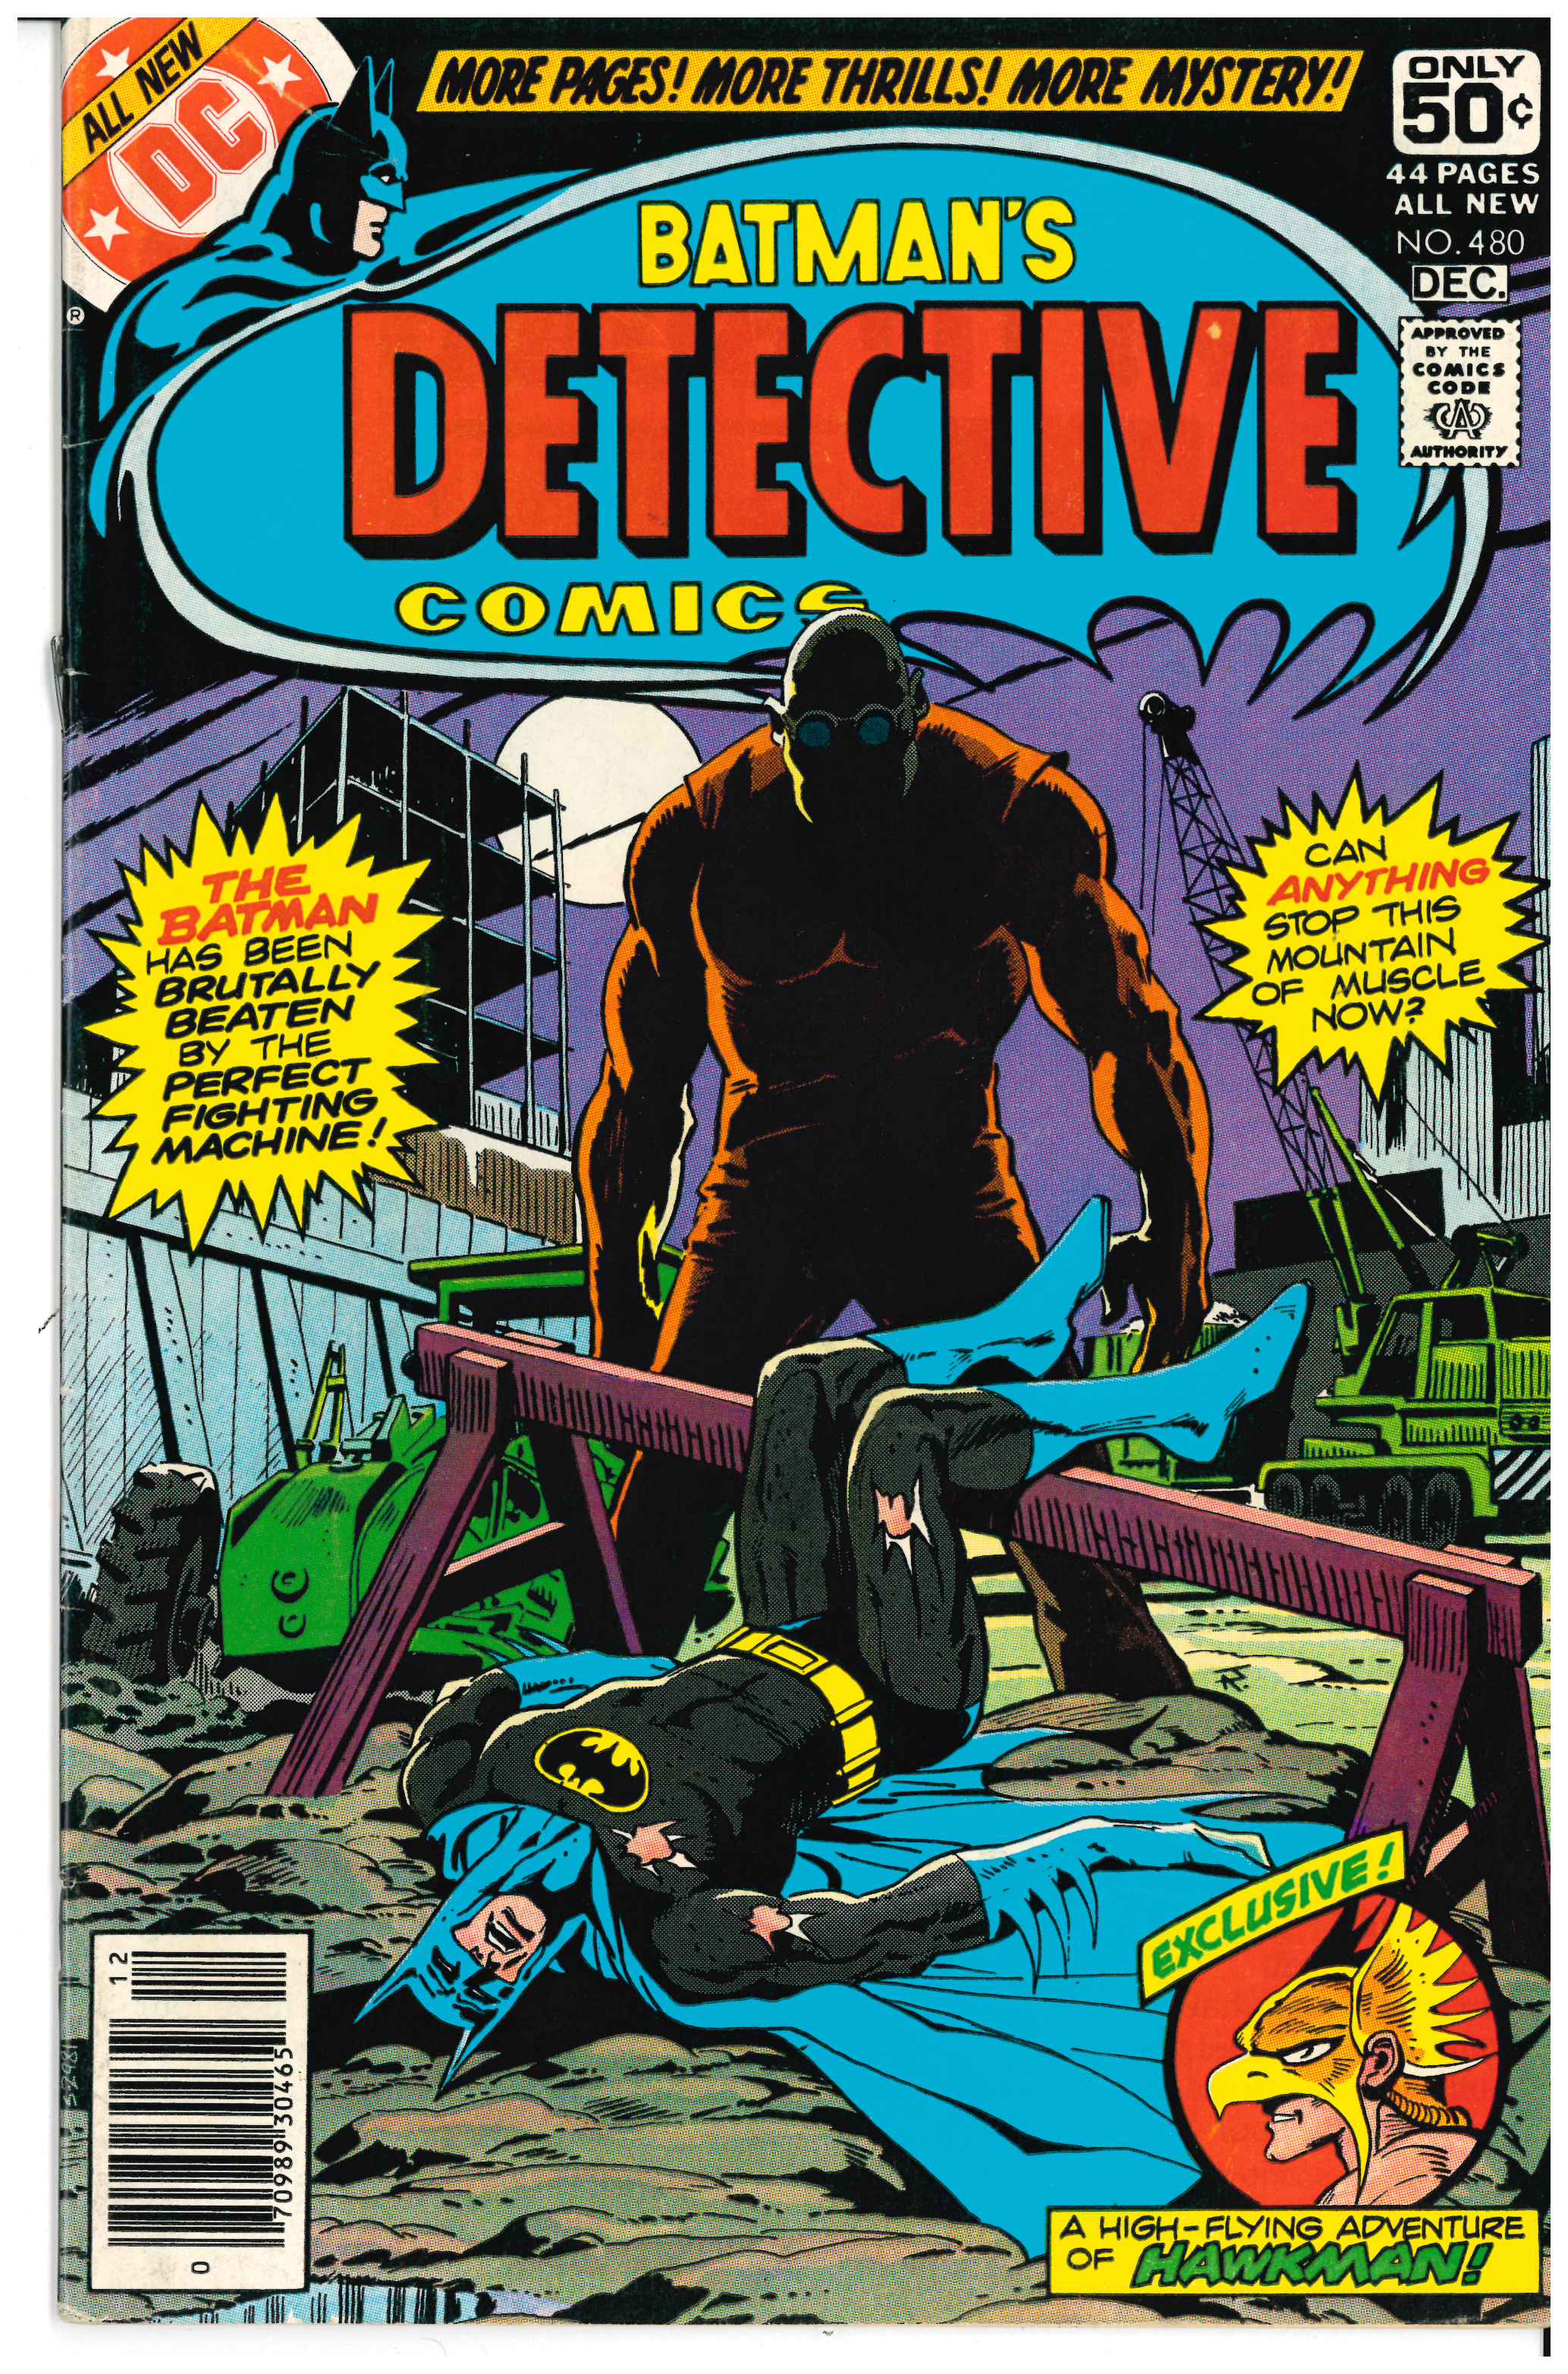 Detective Comics #480